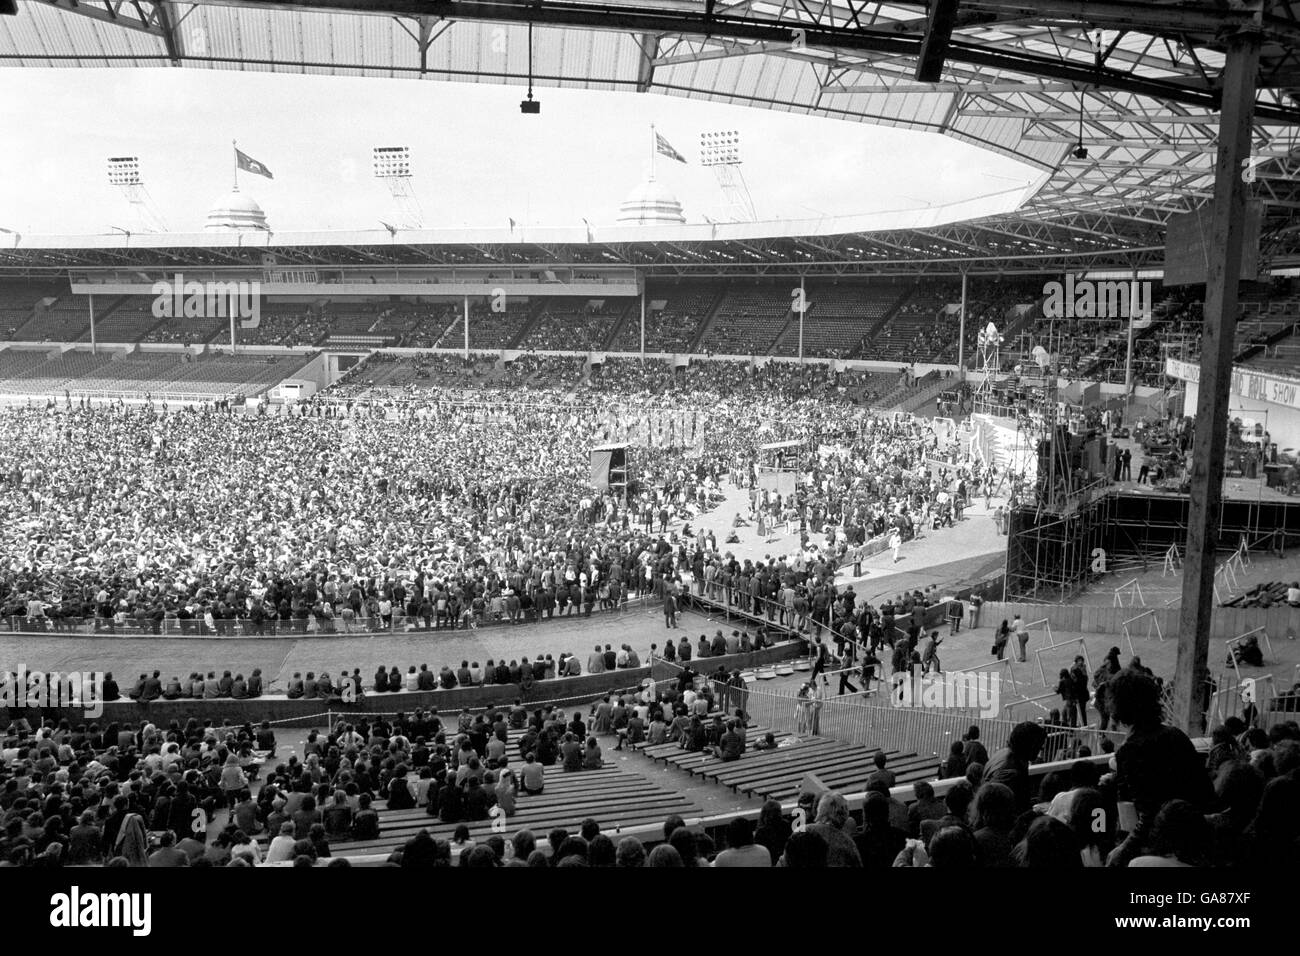 Les passionnés de rock du stade Wembley, où des milliers de personnes ont assisté à un festival Rock 'n' Roll, qui a eu lieu il y a vingt ans. Banque D'Images